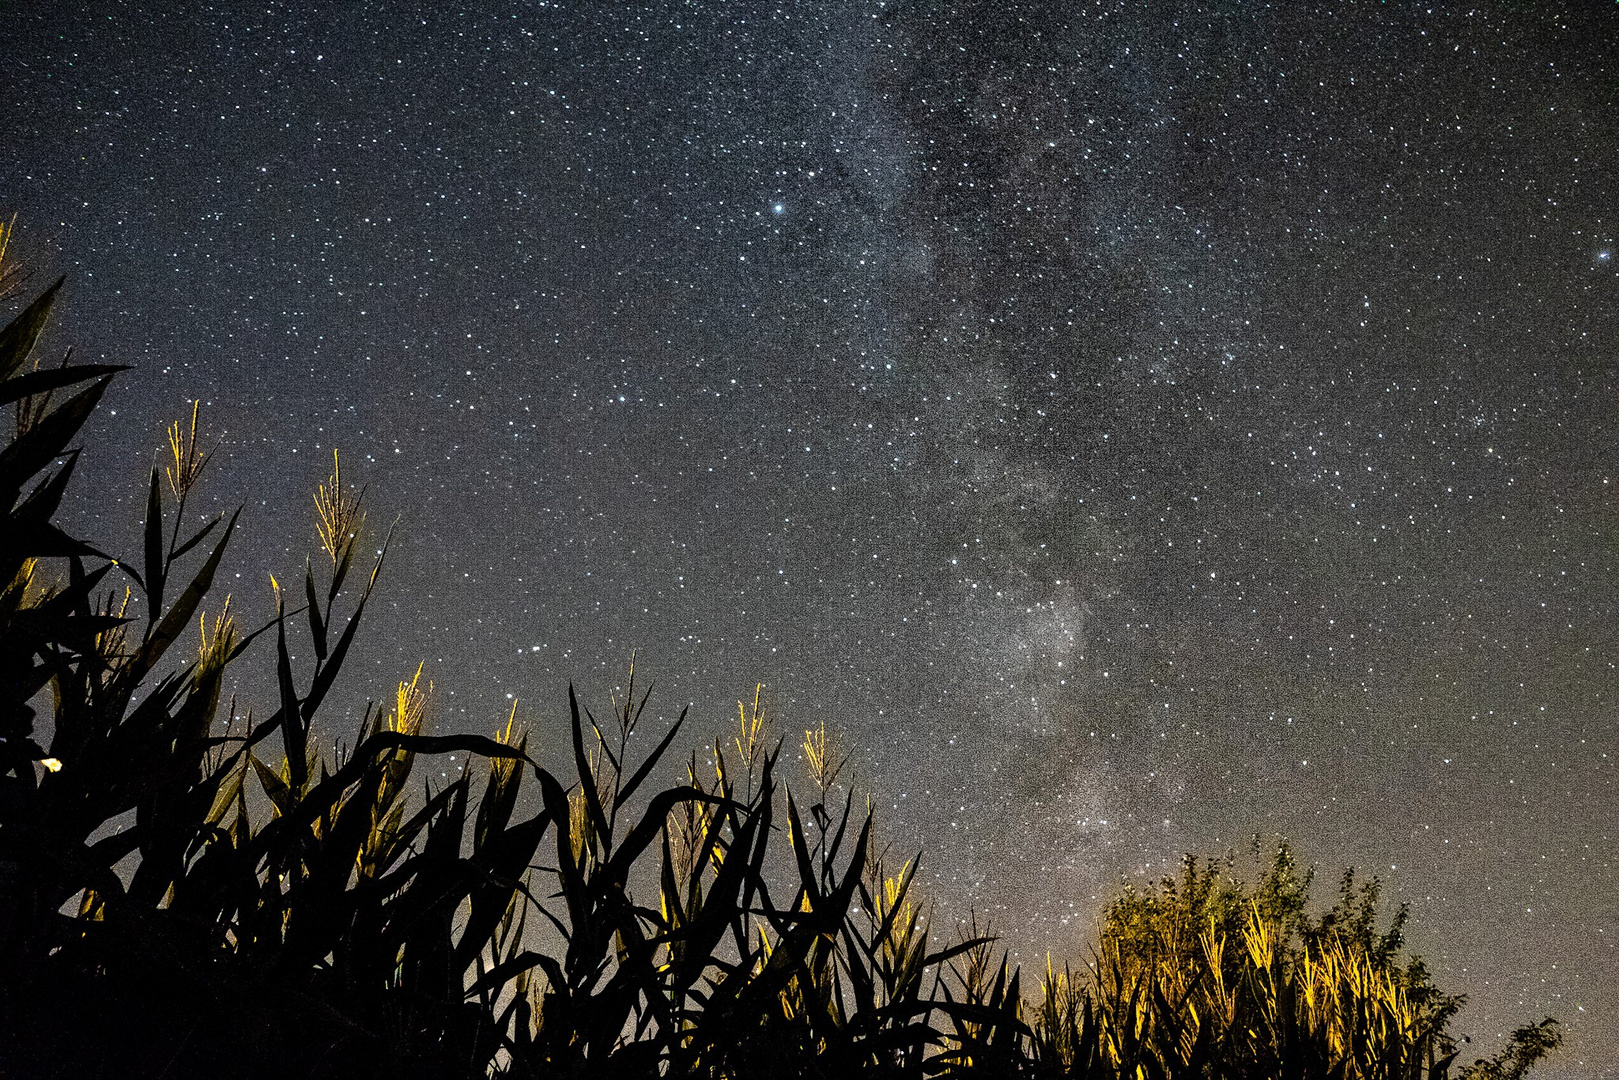 Milky Way over corn